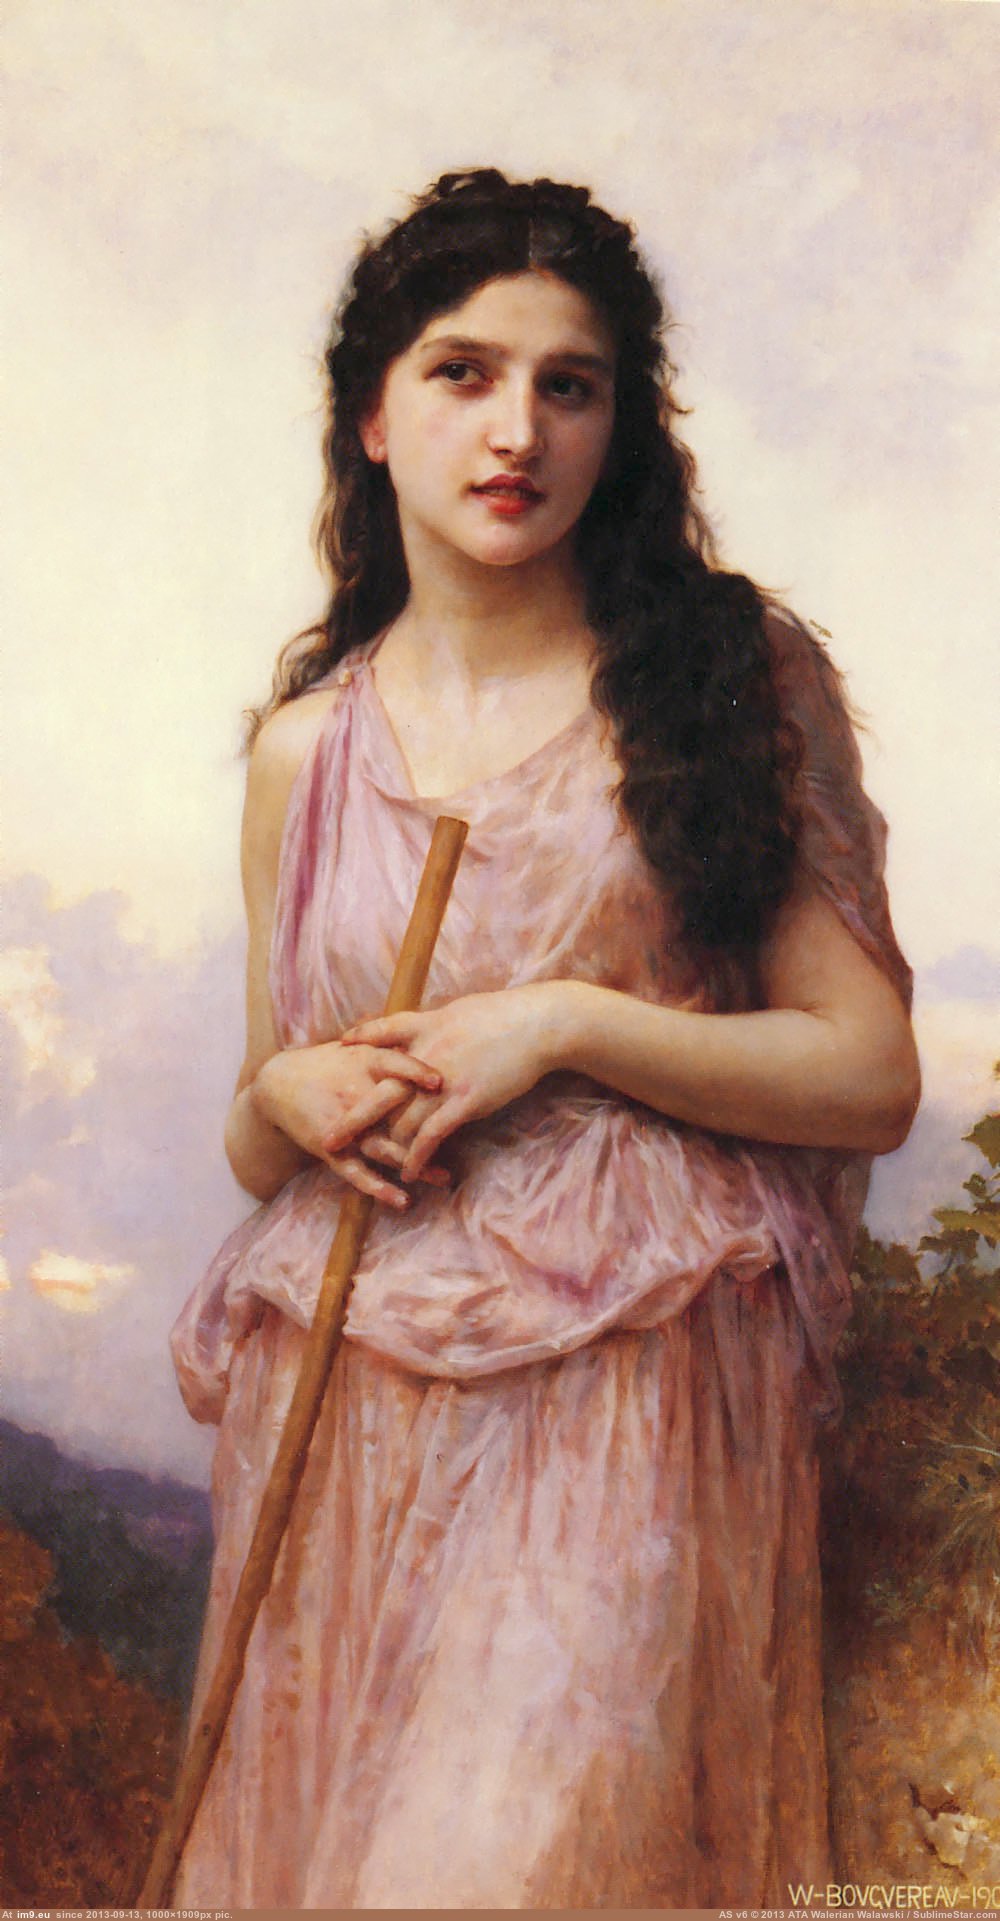 (1902) Lattente - William Adolphe Bouguereau (in William Adolphe Bouguereau paintings (1825-1905))